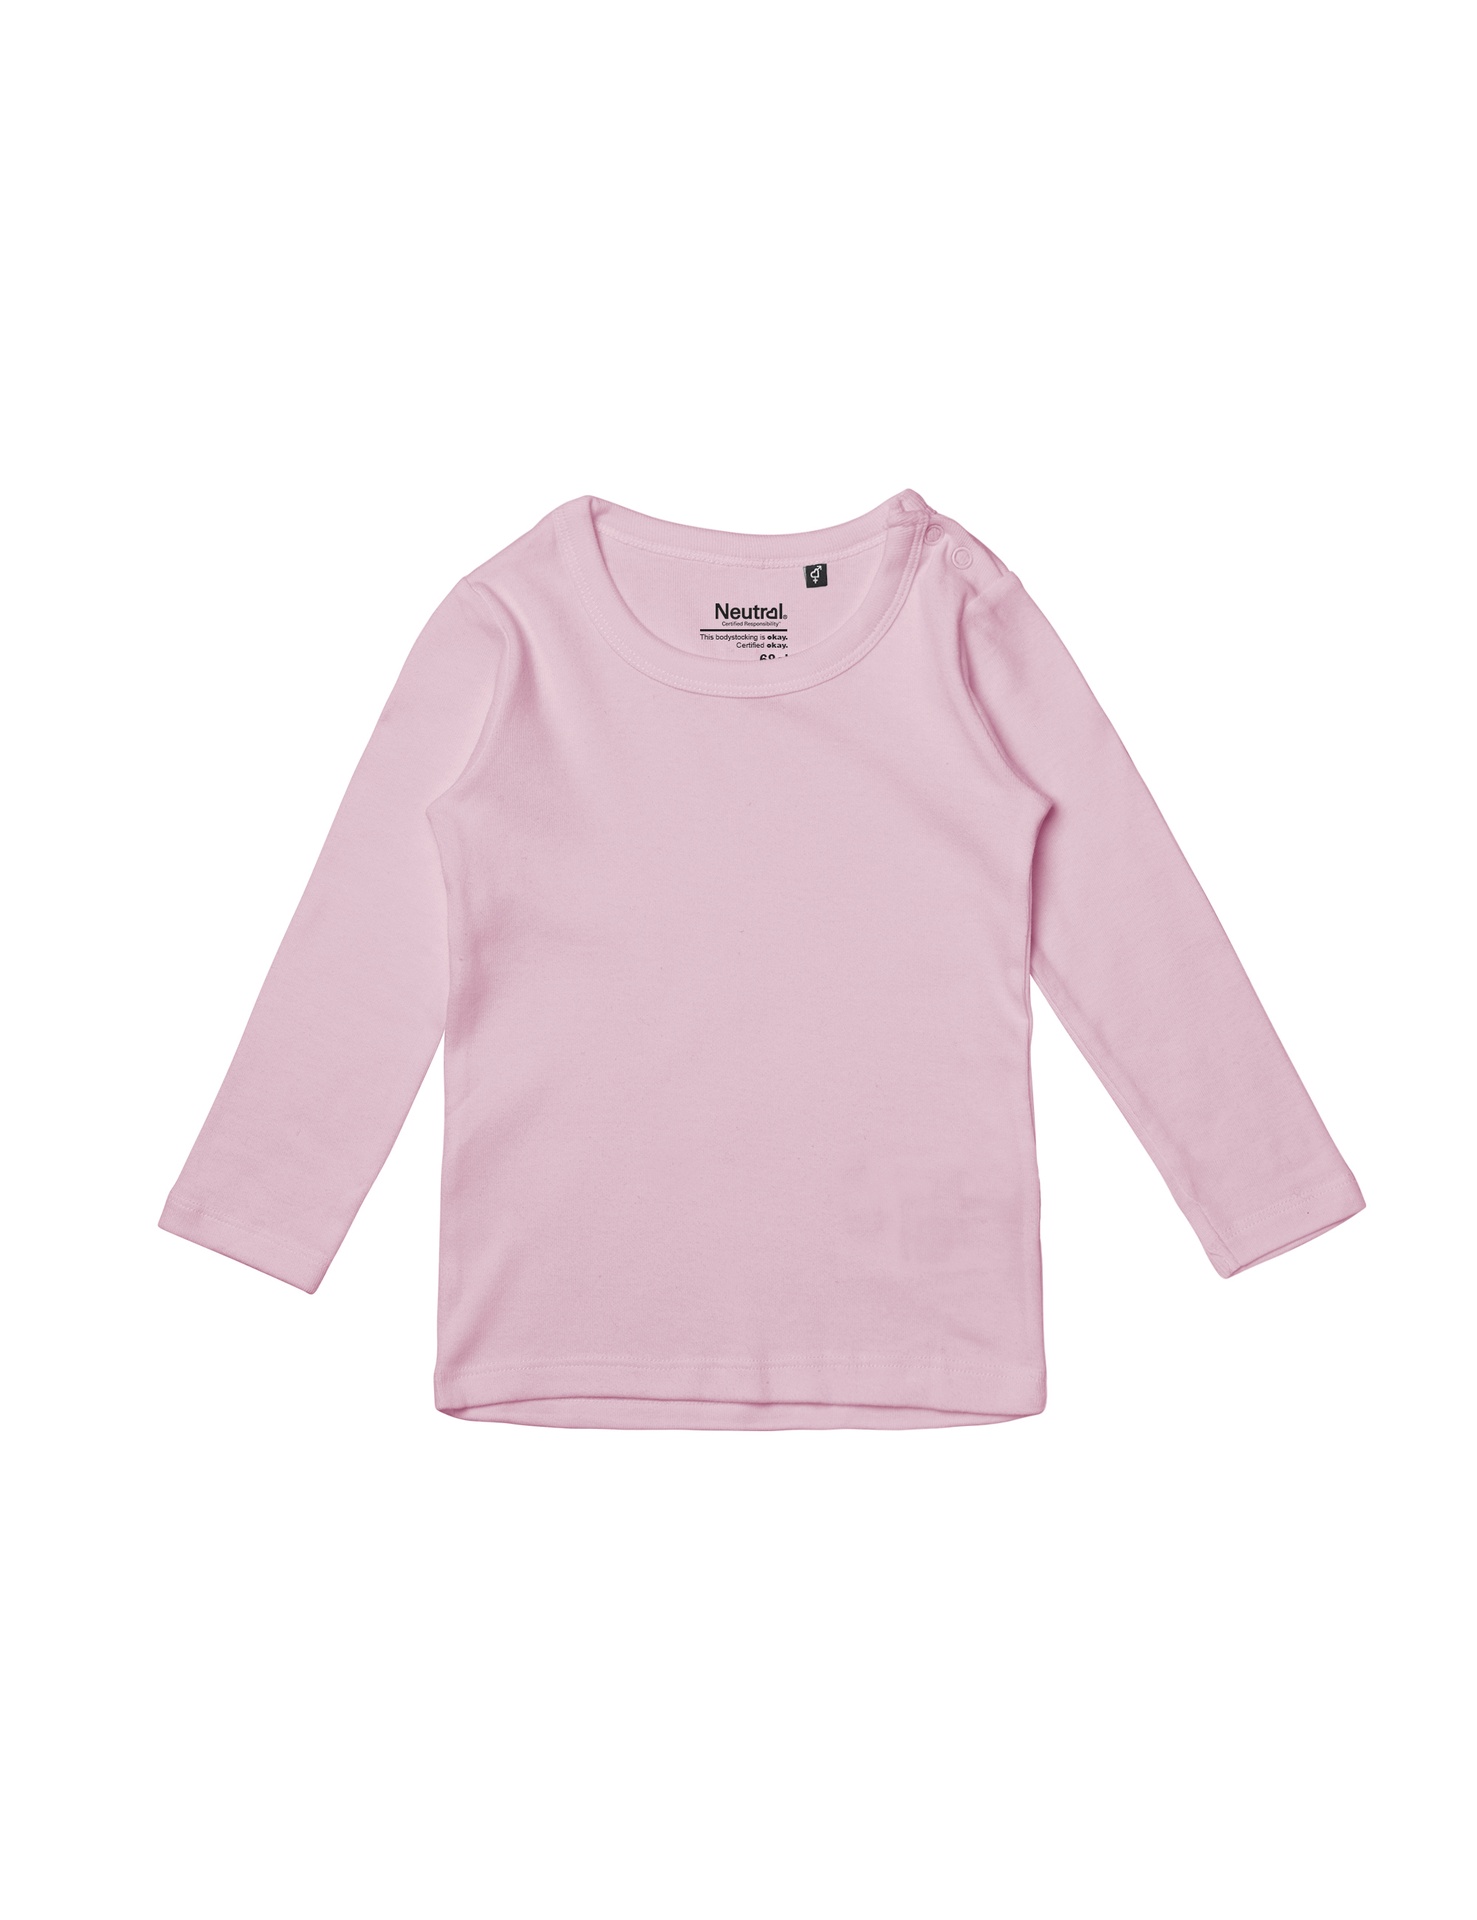 [PR/05623] Babies Long Sleeve T-Shirt (Light Pink 20, 68 cm)